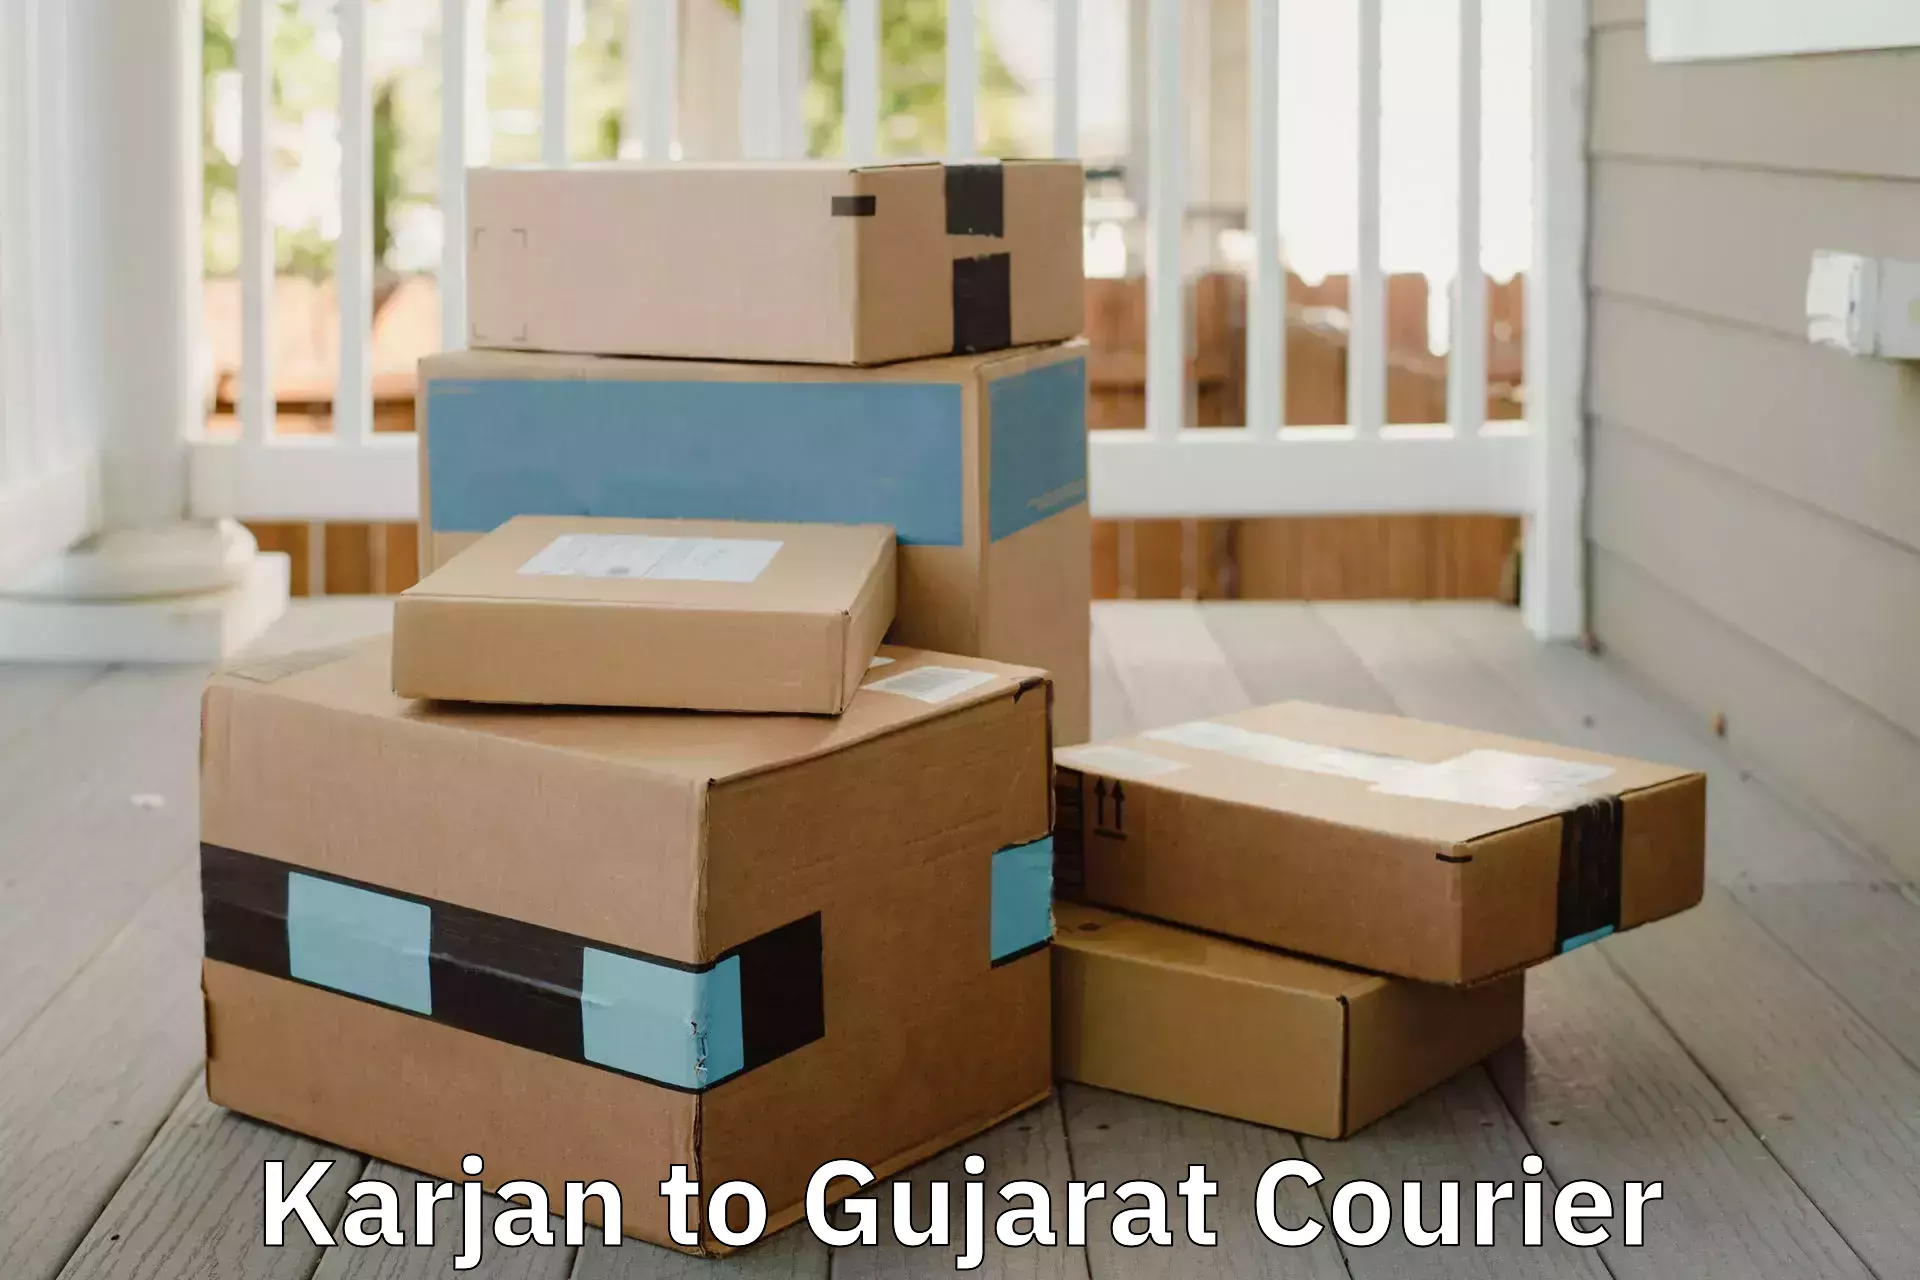 Moving and handling services Karjan to Karjan